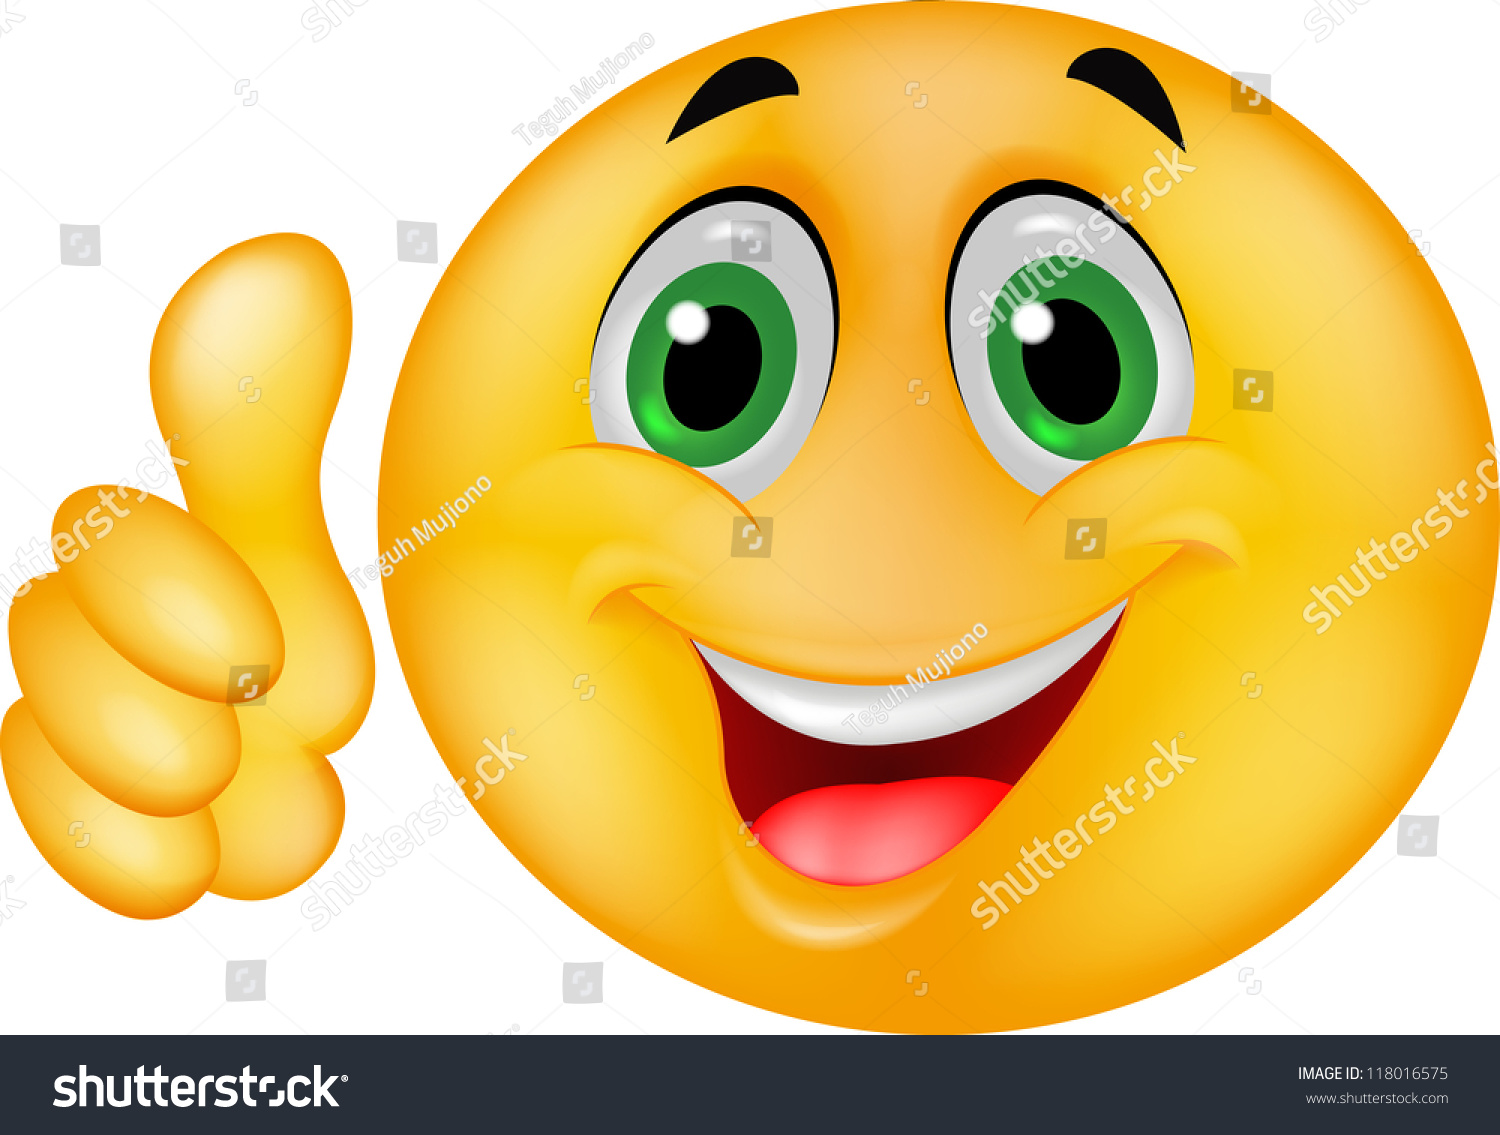 Happy Smiley Emoticon Face Stock Photo 118016575 ...